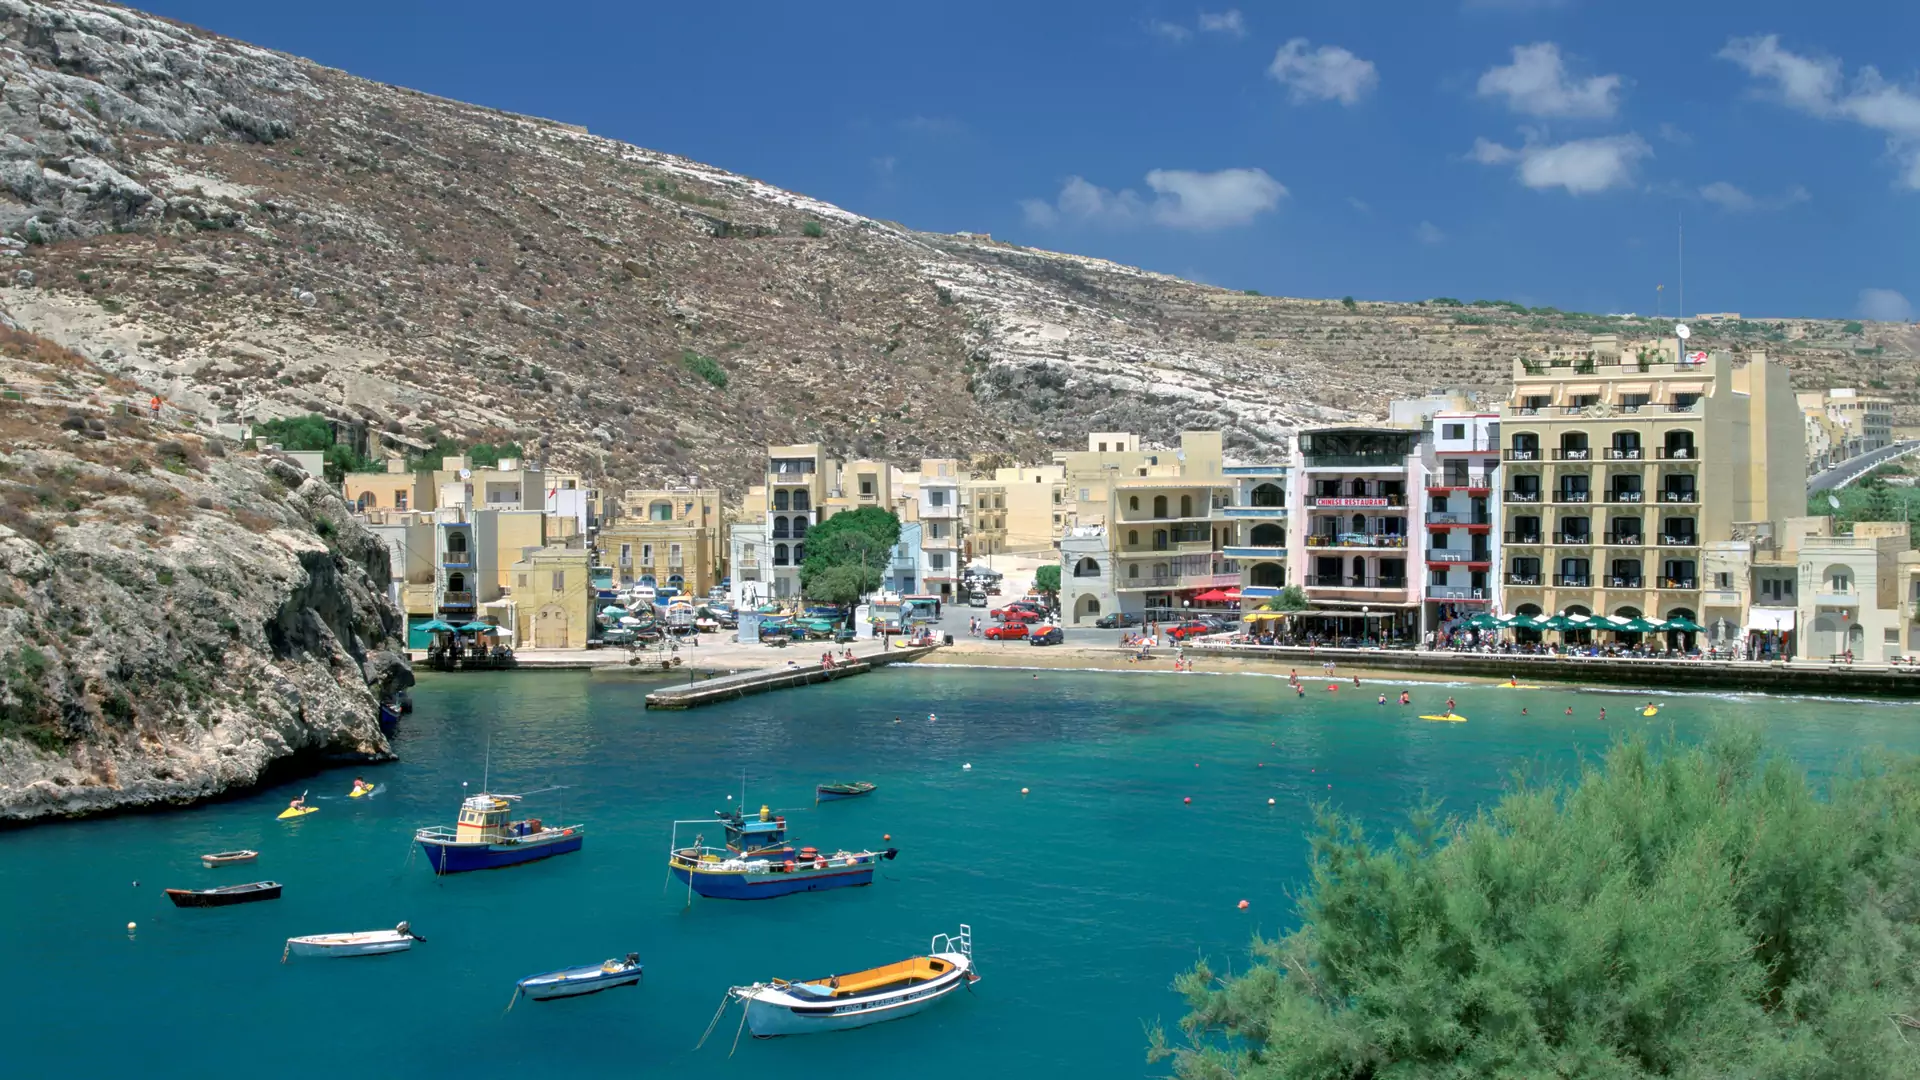 Maj na Malcie to idealny moment, aby zdążyć odpocząć przed turystycznym boomem